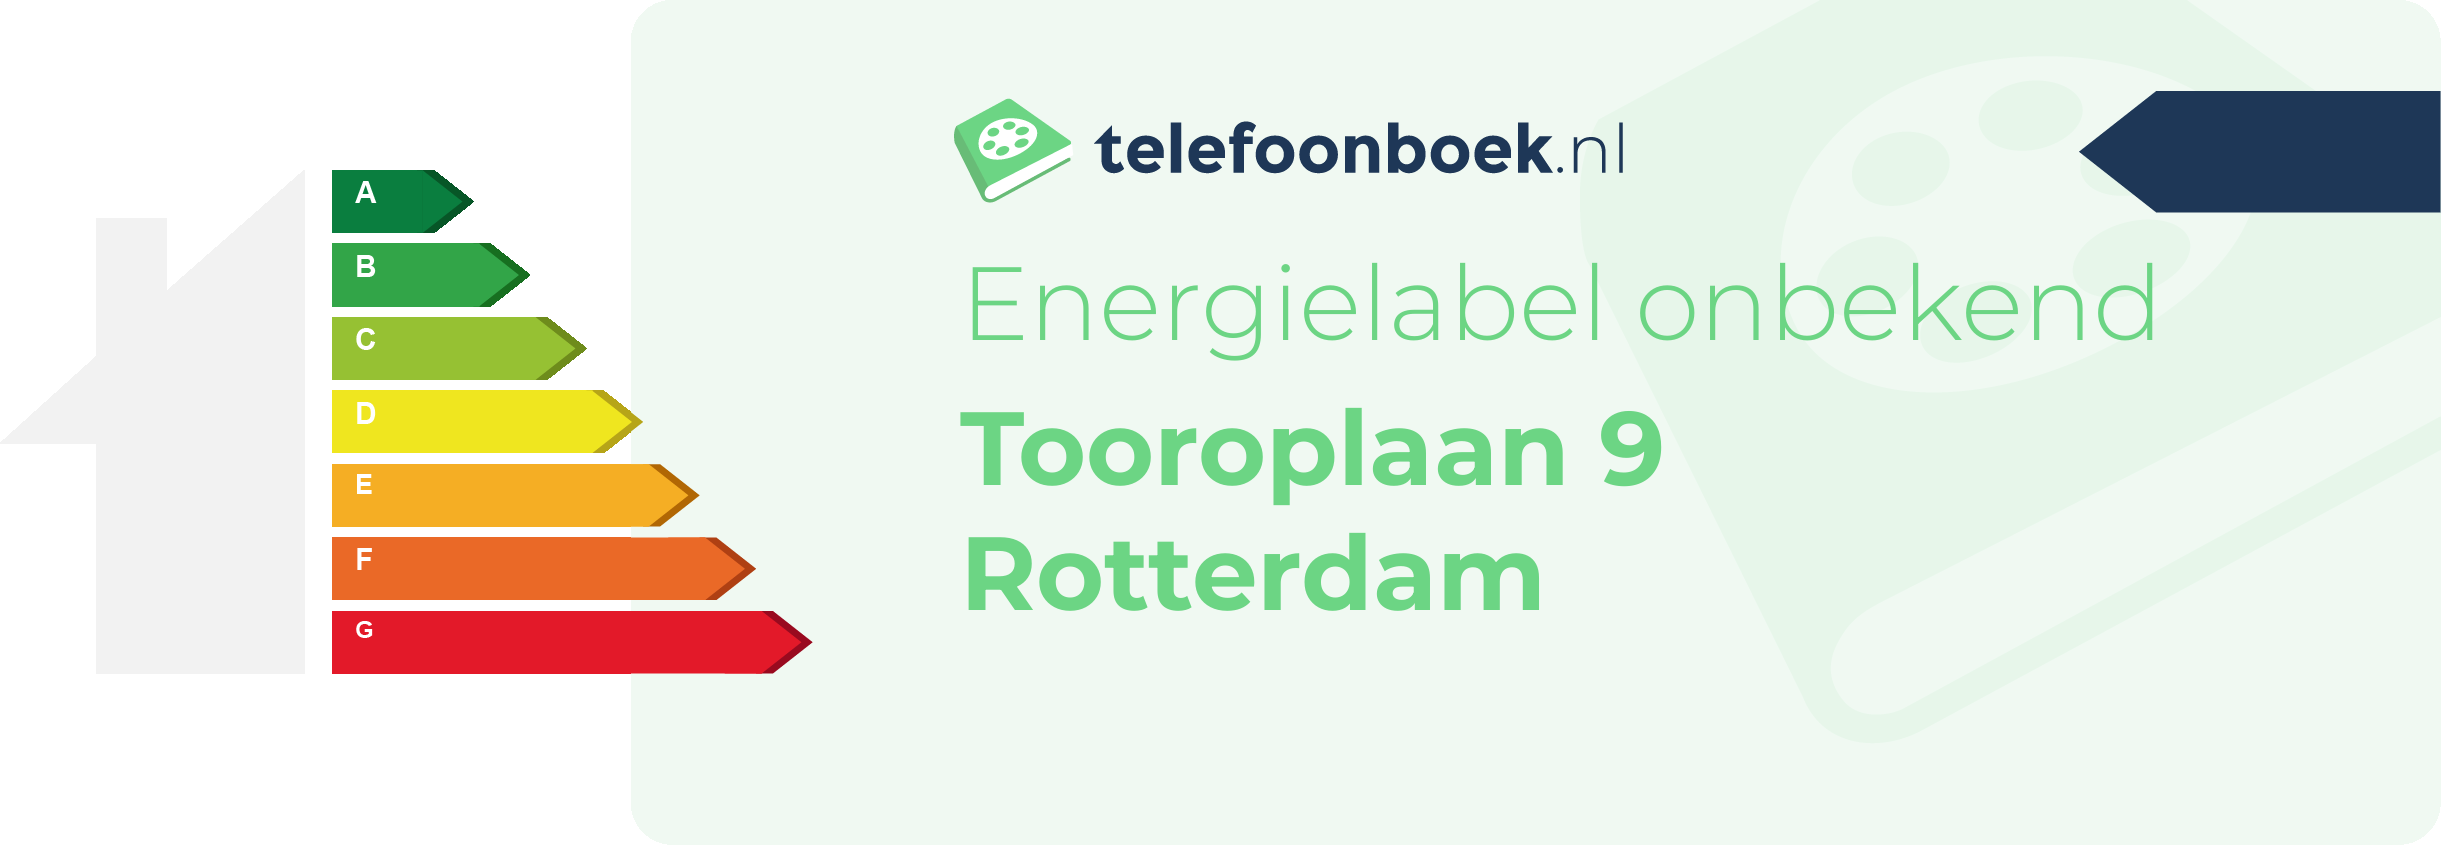 Energielabel Tooroplaan 9 Rotterdam